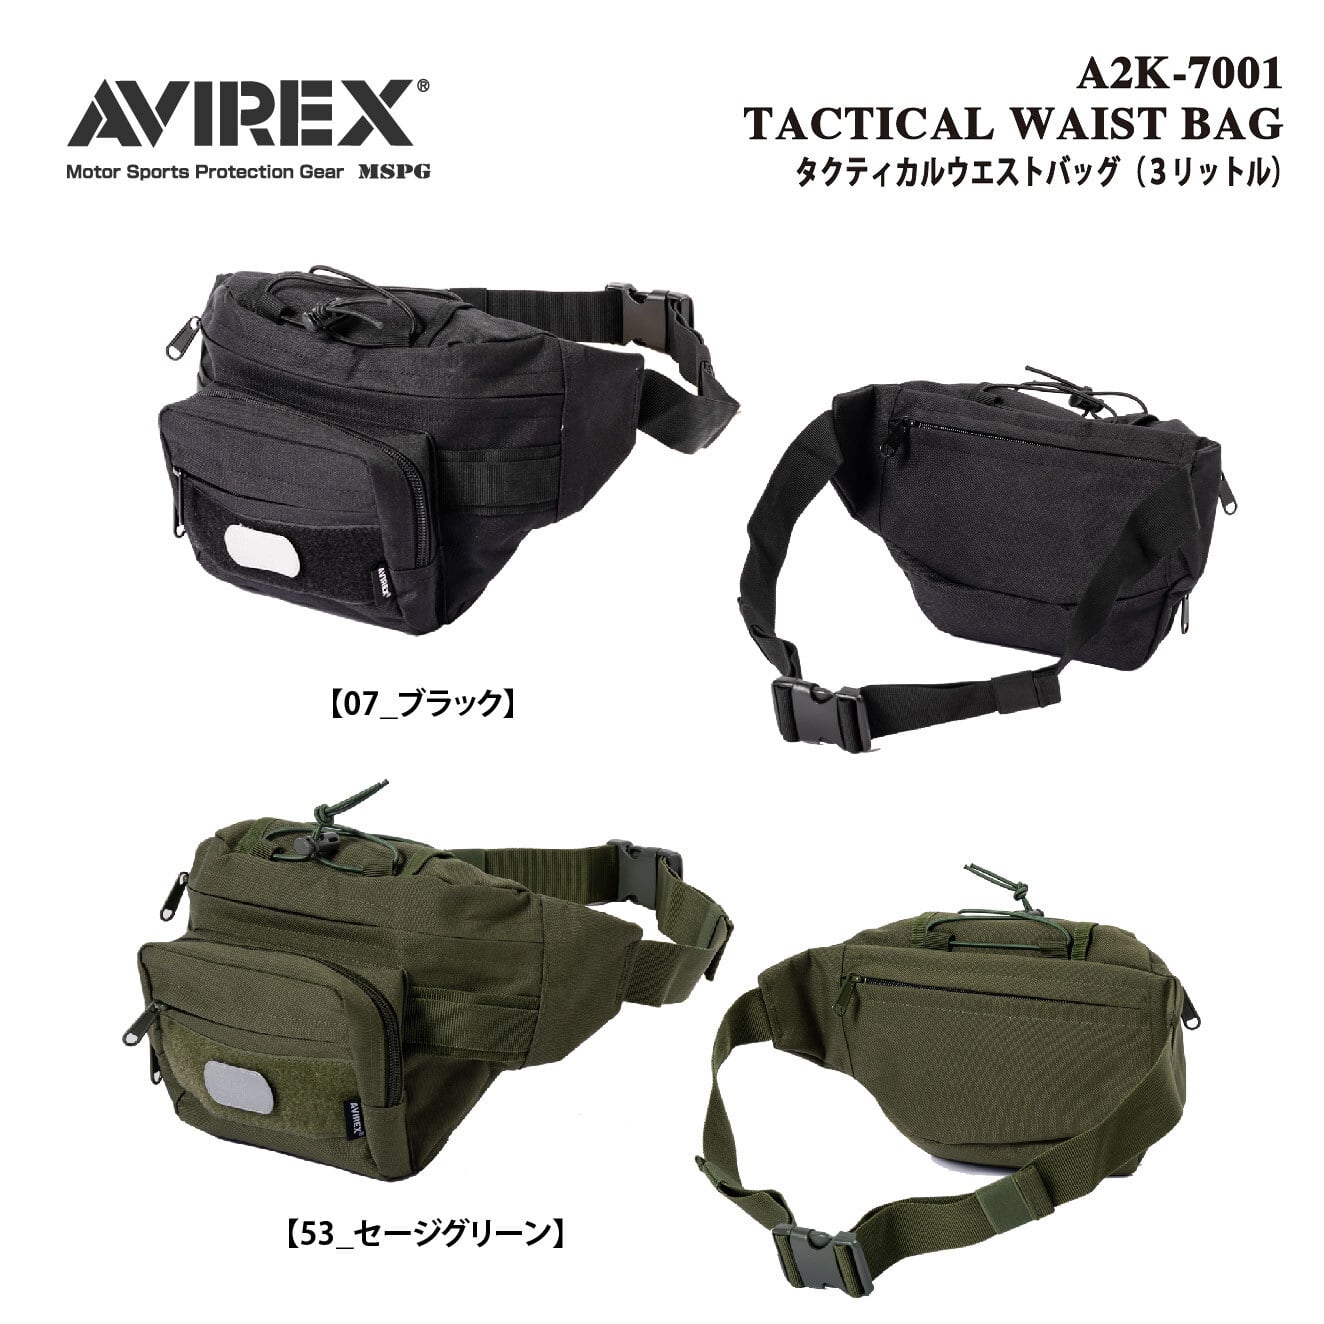 A2K-7001 TACTICAL WAIST BAG アビレックス タクティカル 